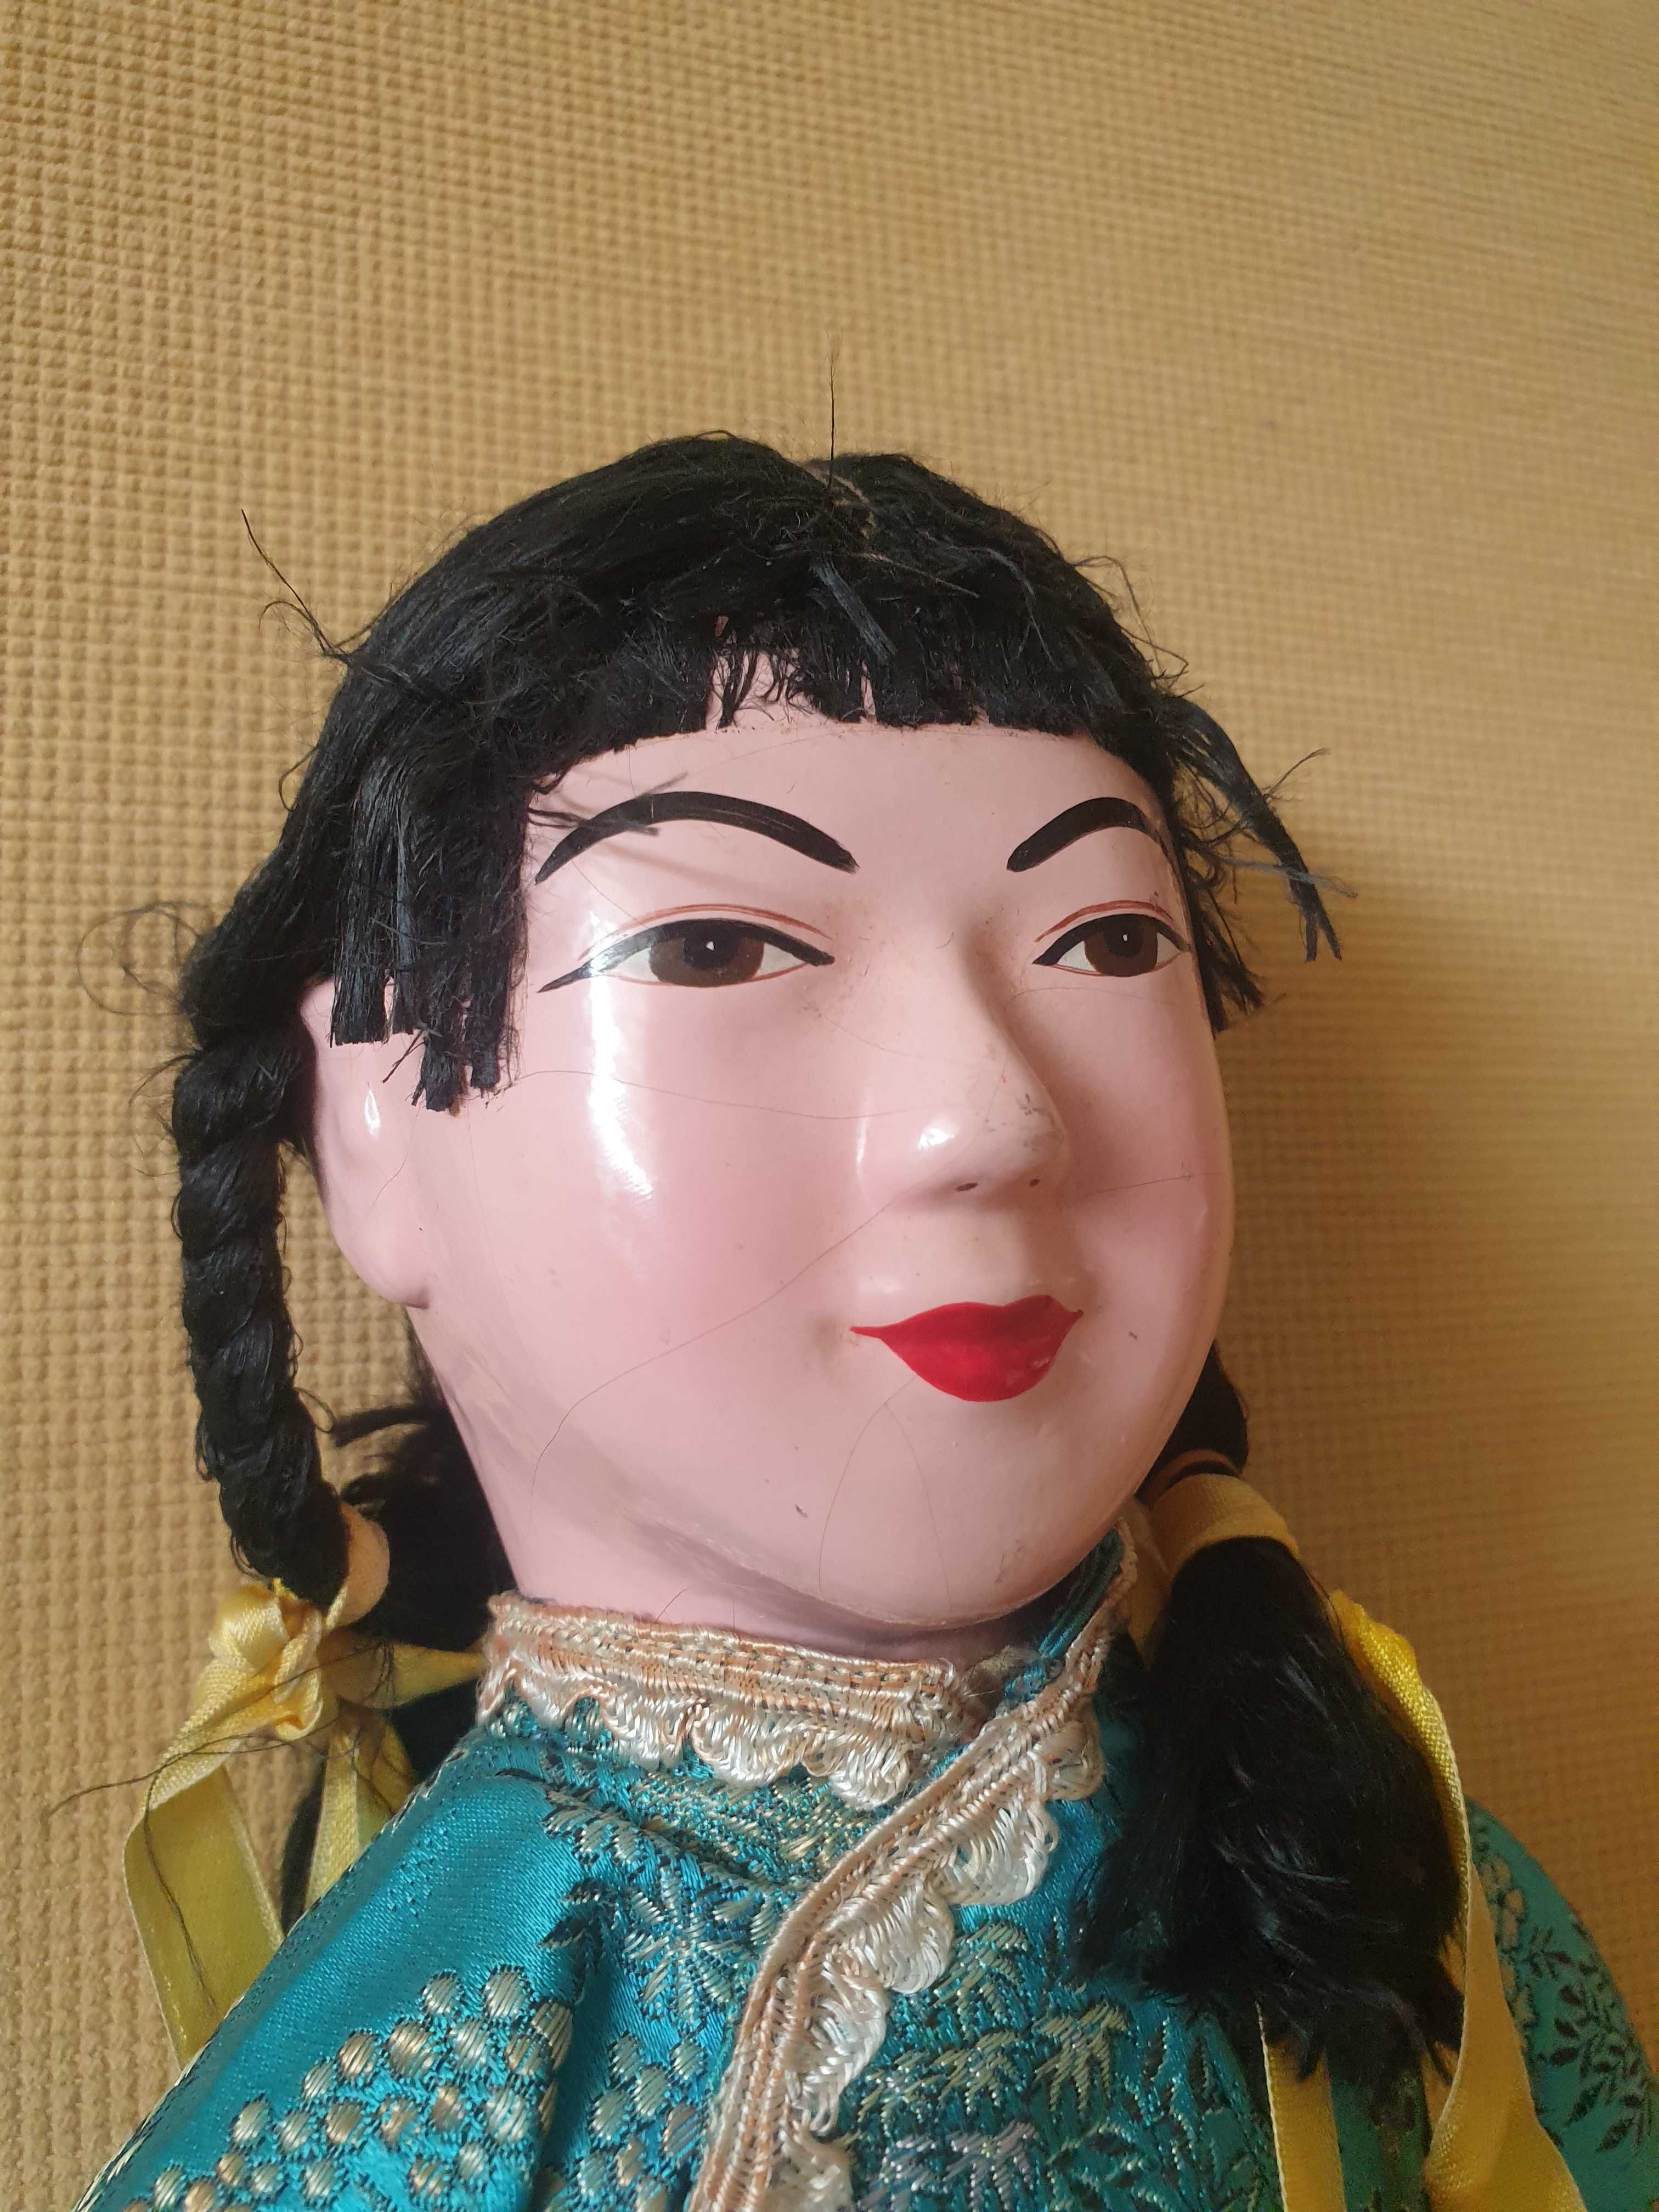 Lalka porcelanowa kolekcjonerska stara zabawka rękodzieło Japonka